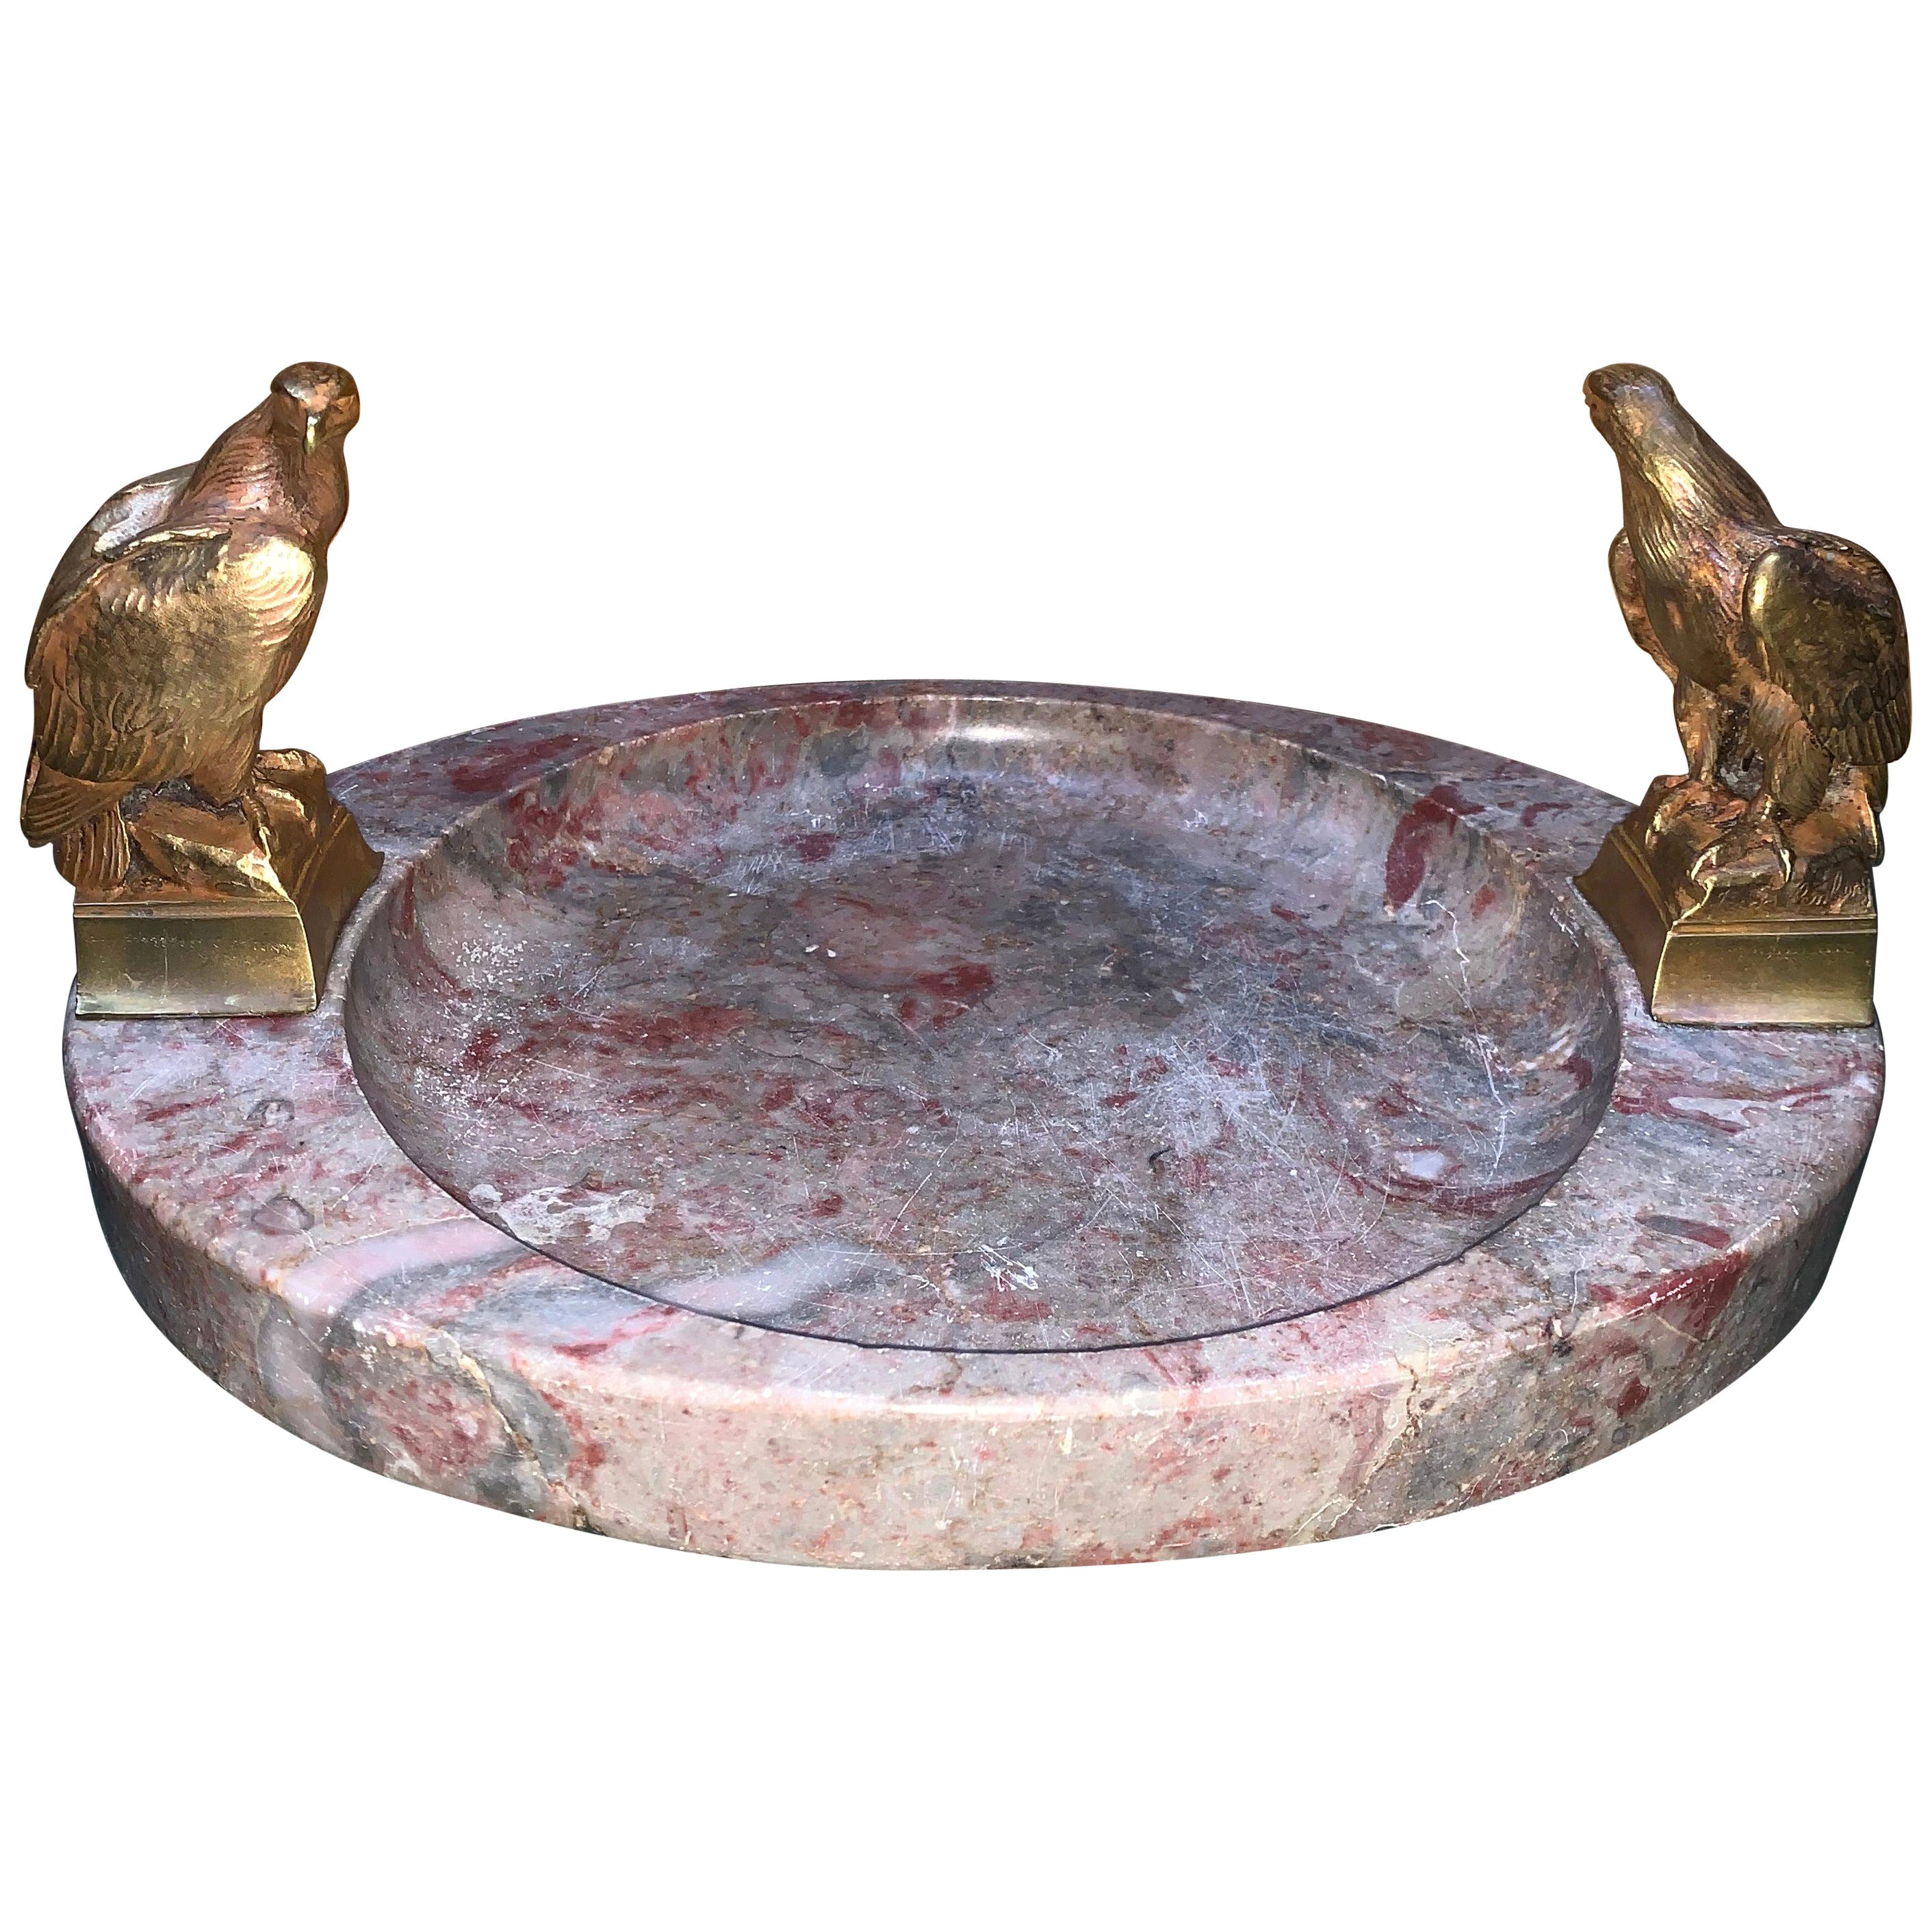 Grand cendrier ou centre de table en marbre ovale signé avec deux aigles en bronze